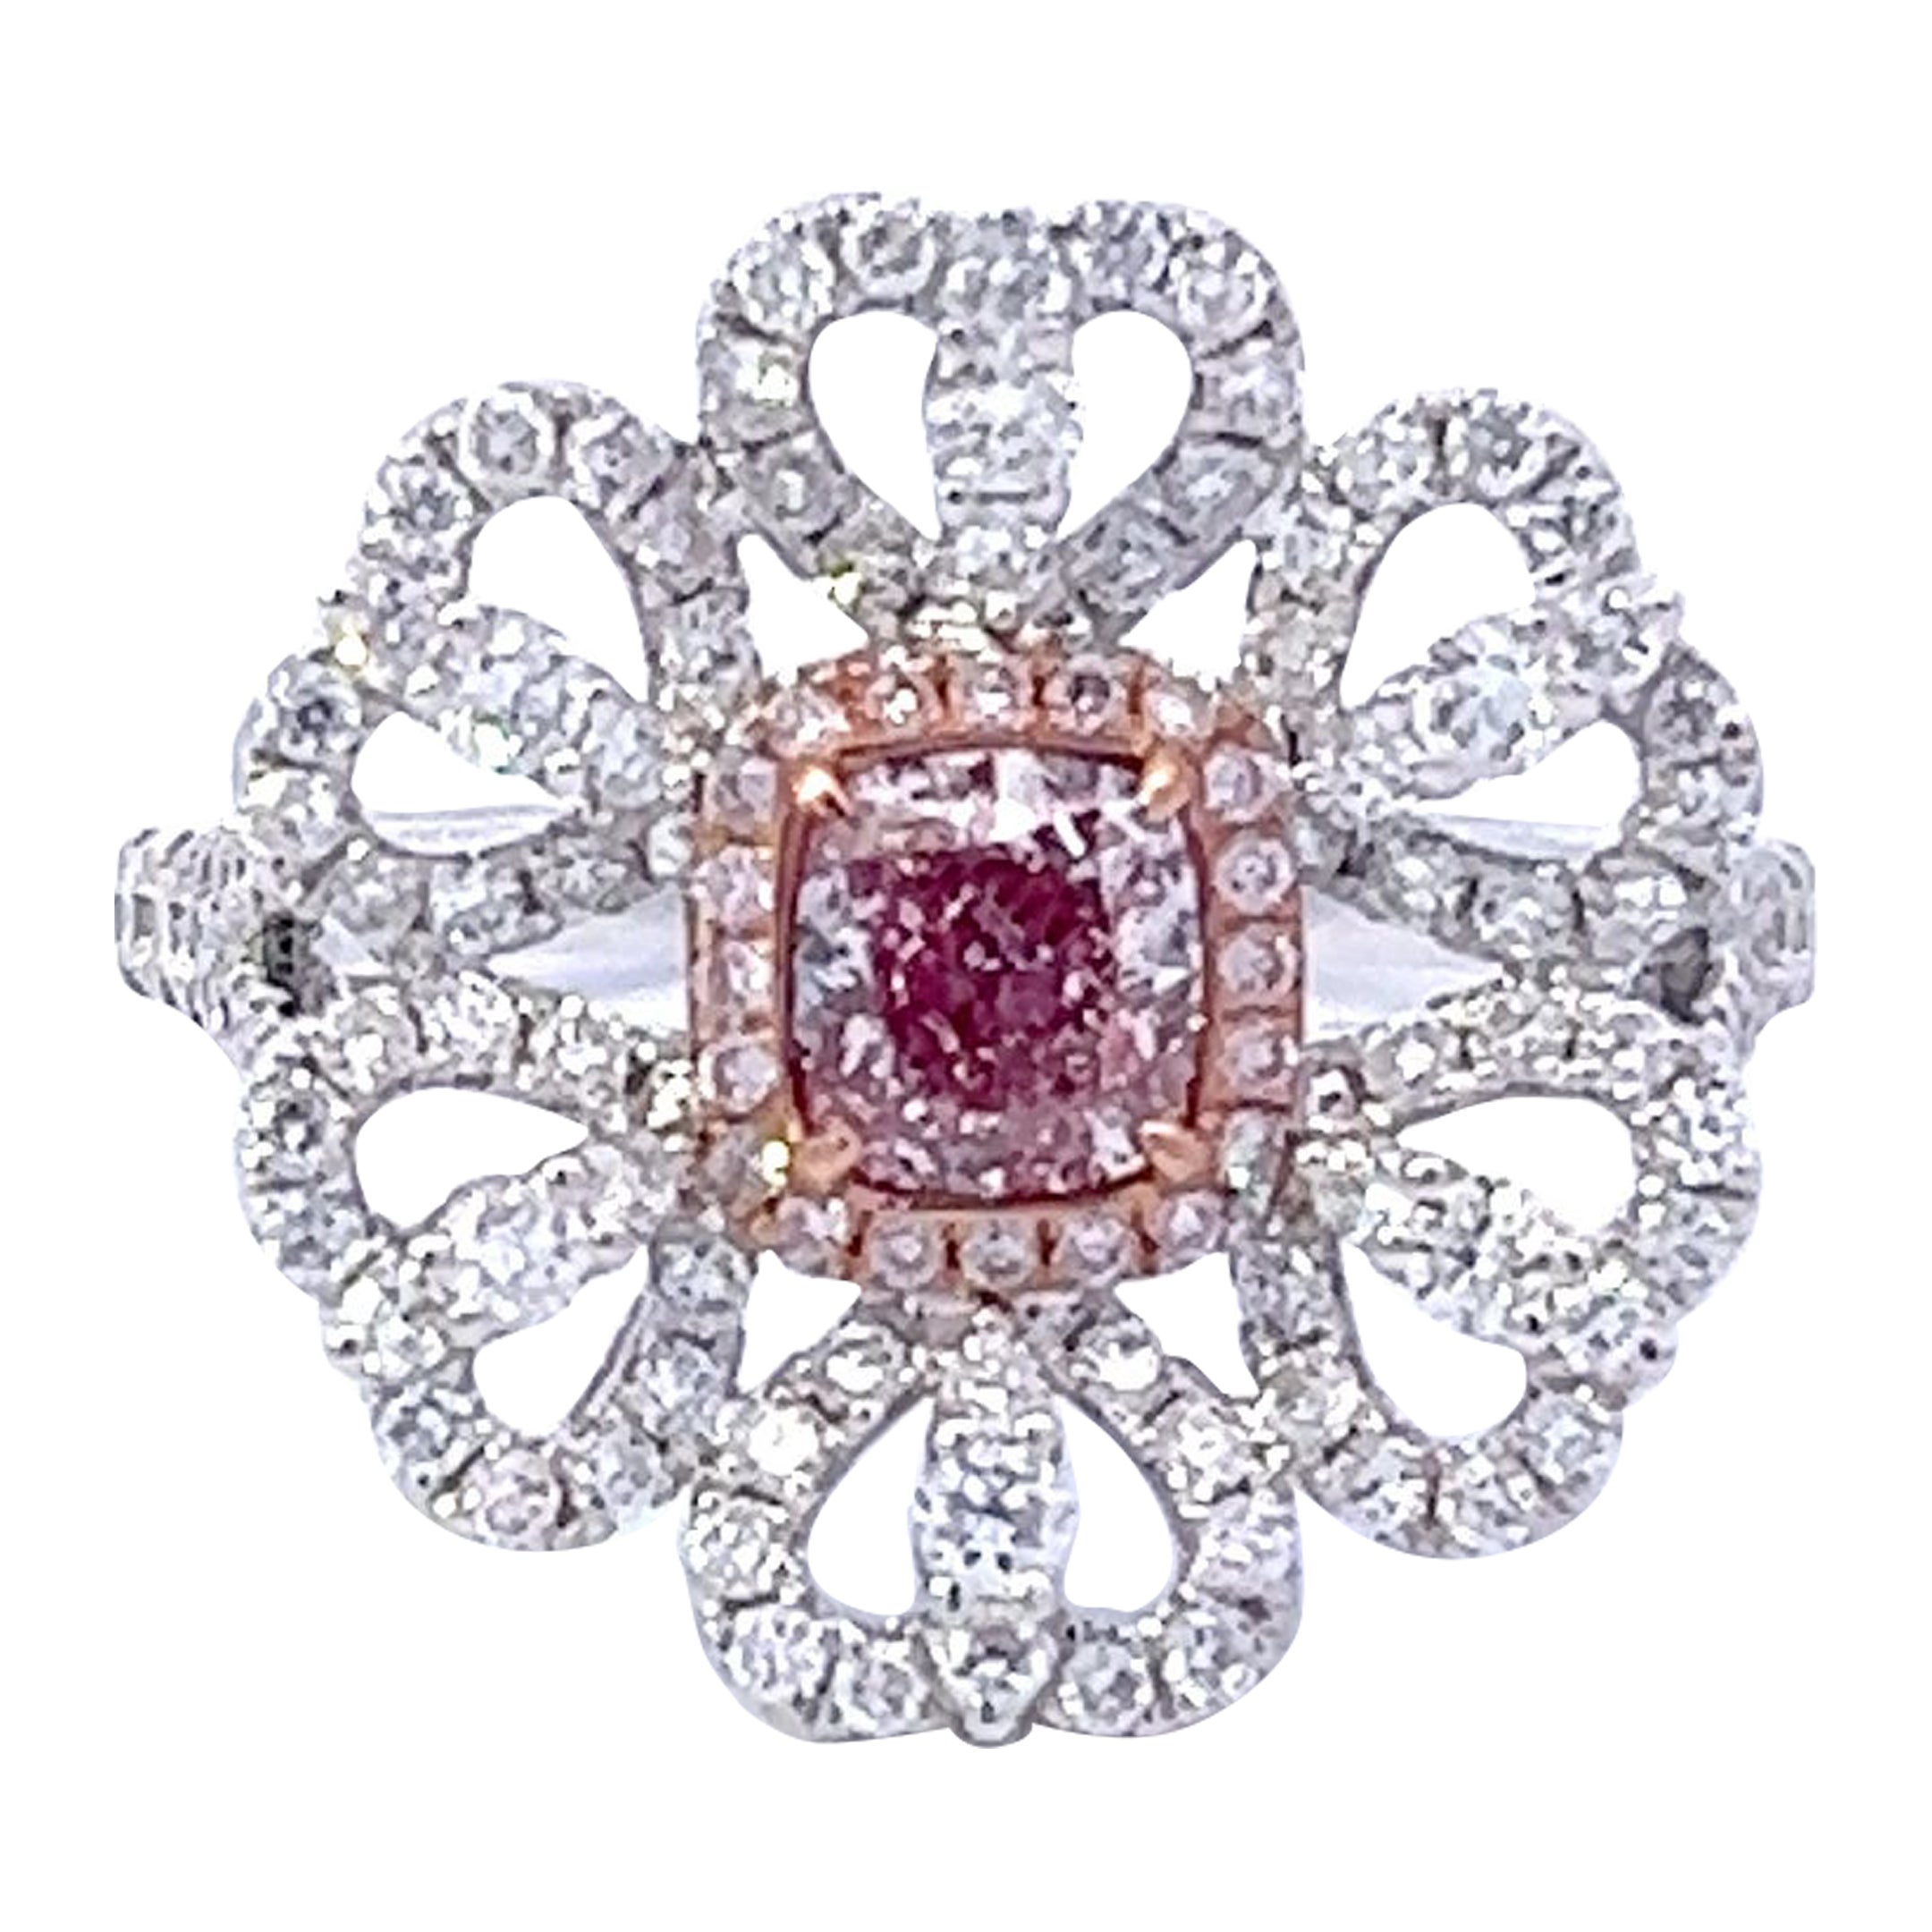 GIA Certified 0.59 Carat Light Pink Diamond Ring